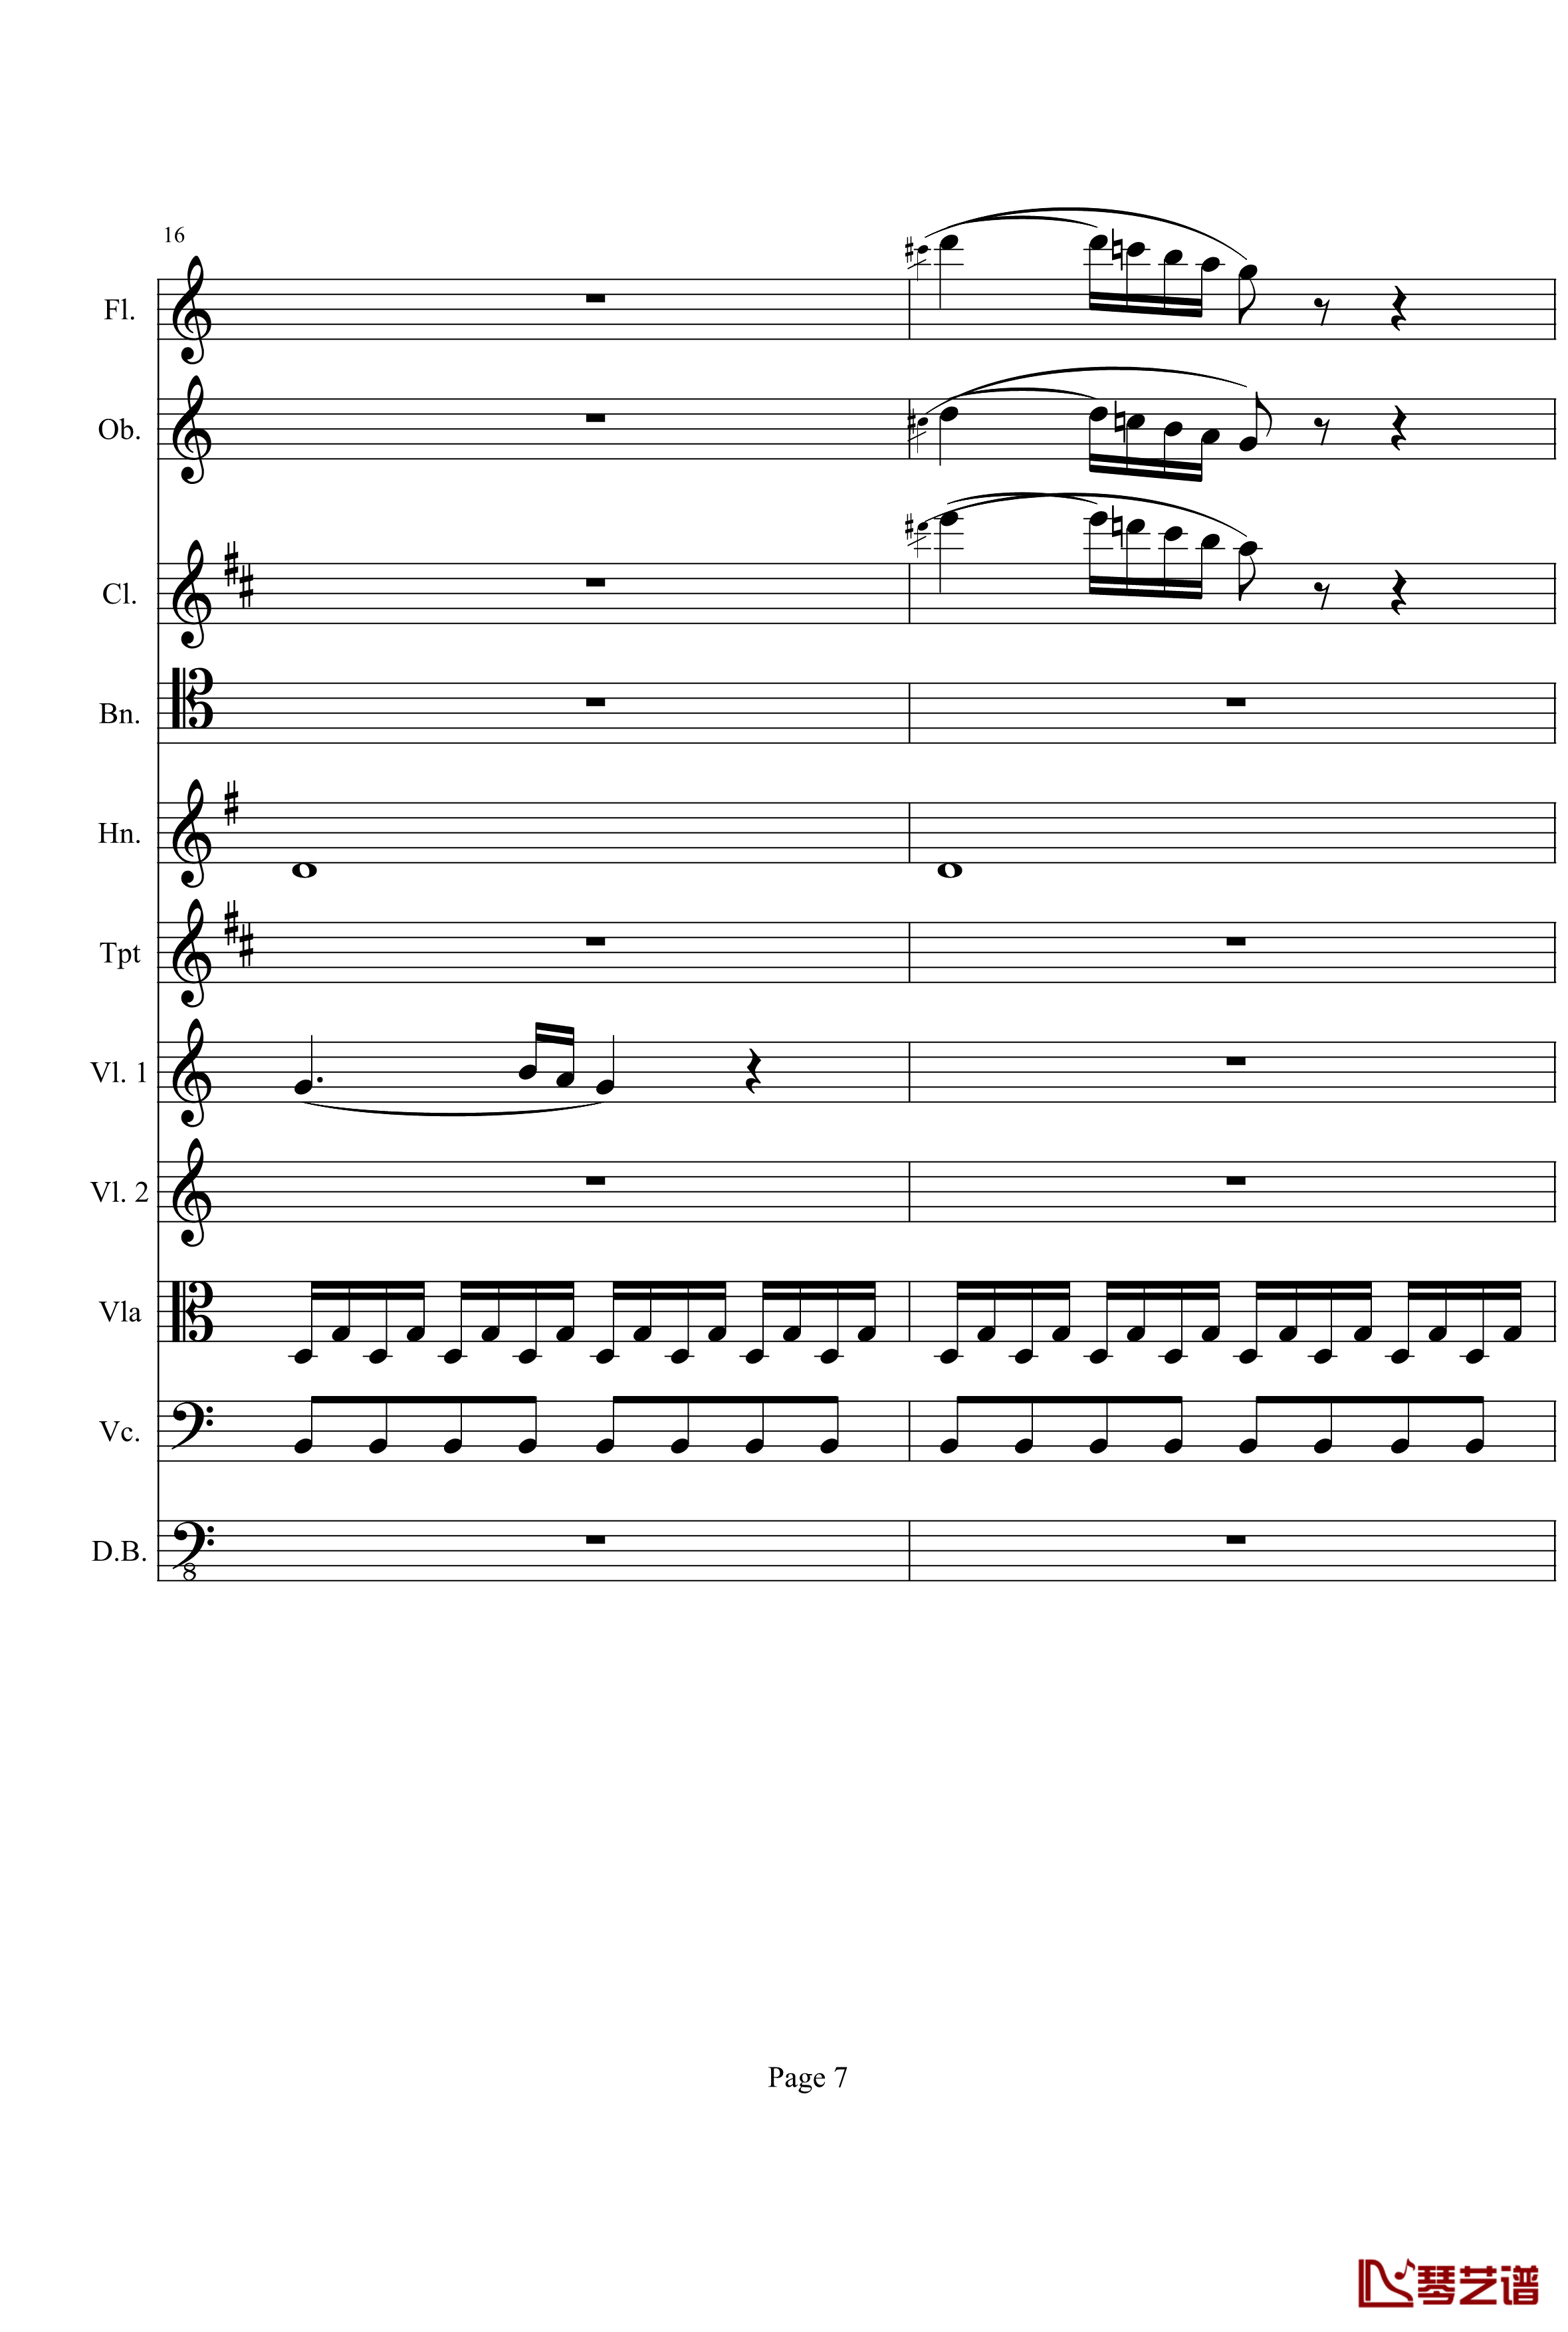 奏鸣曲之交响钢琴谱-第21首-Ⅰ-贝多芬-beethoven7